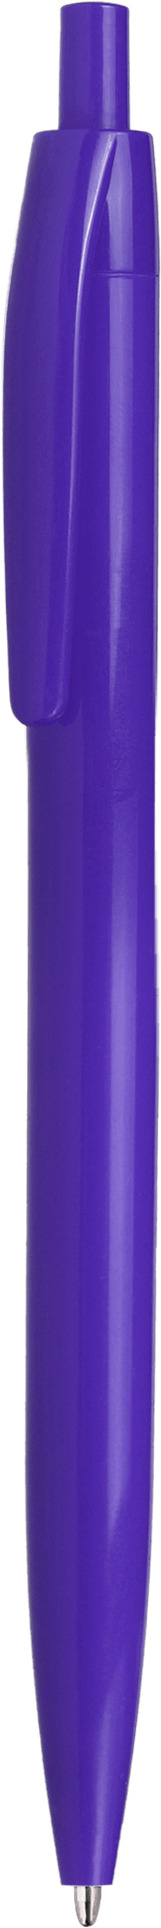 Ручка DAROM, однотонная, фиолетовая